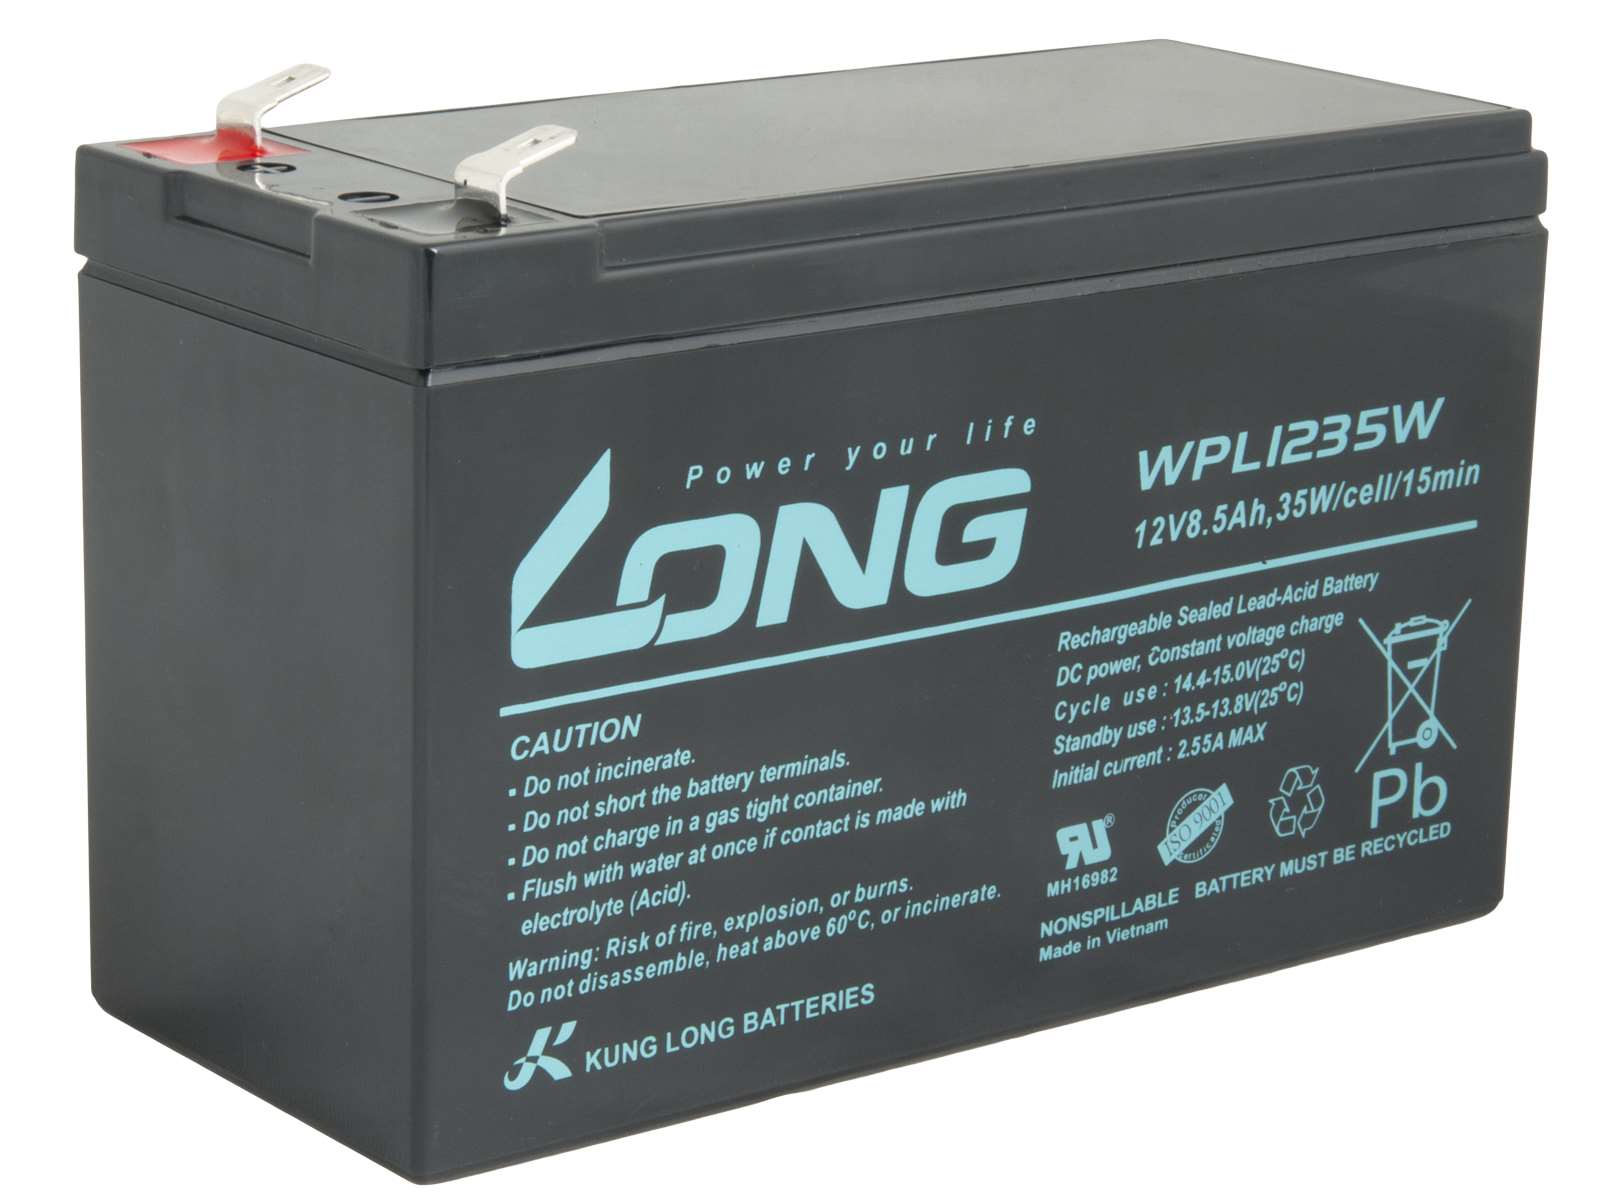 LONG batéria 12V 8, 5Ah F2 HighRate LongLife 9 rokov (WPL1235W)0 